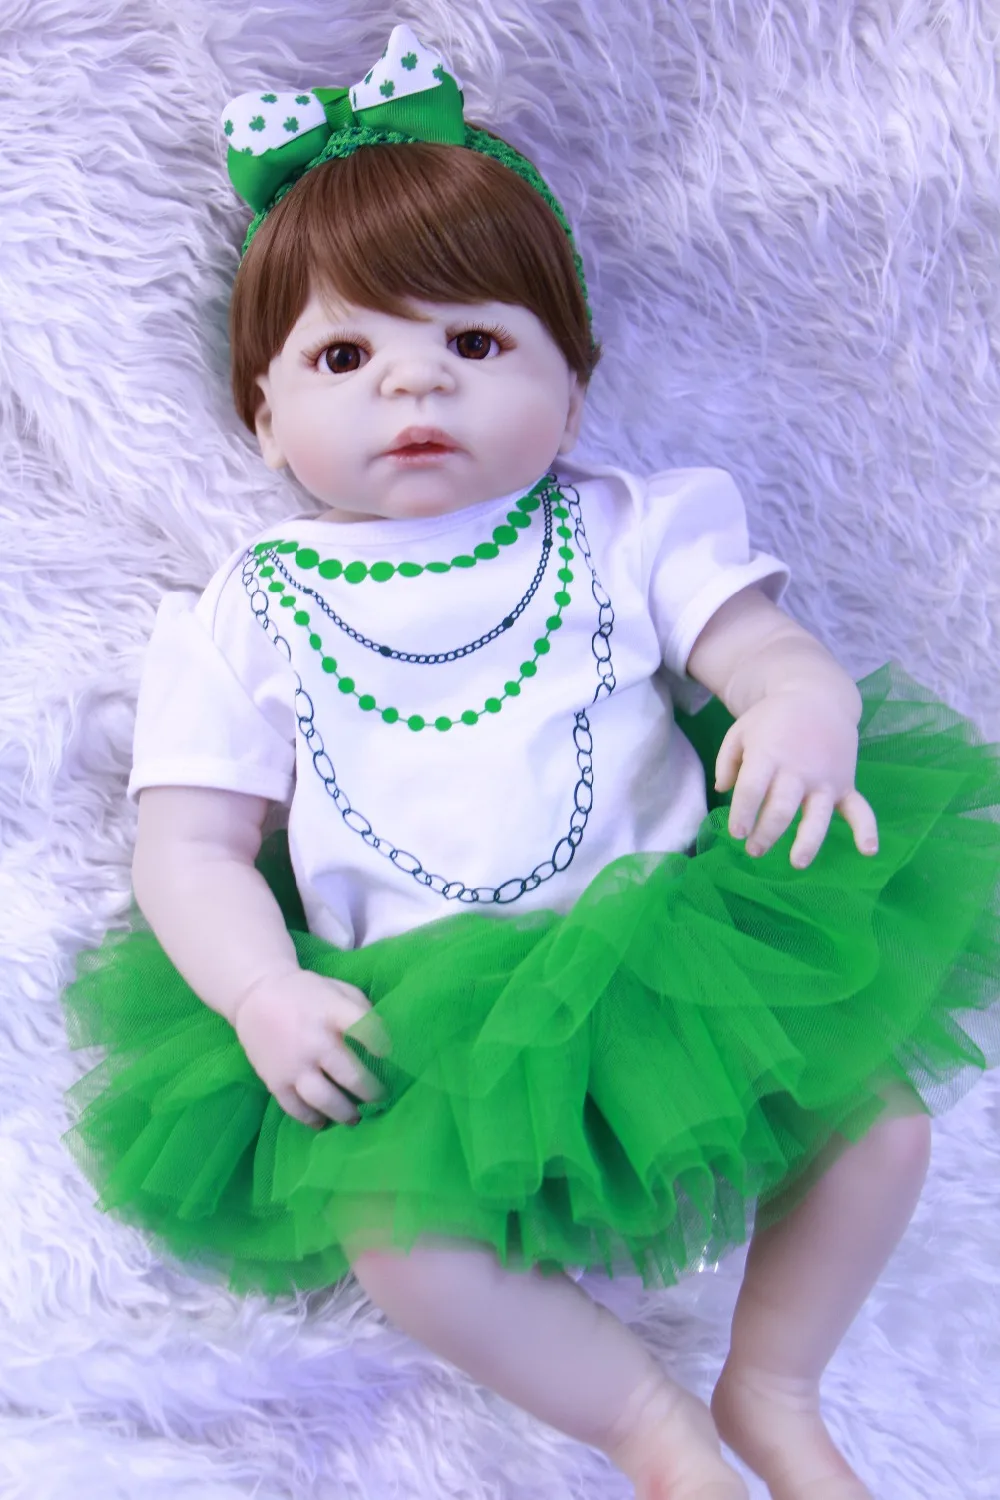 Npk Bebe девочка возрождается 23 "Реалистичные Полный силиконовые куклы для новорожденных и малышей игрушки для детей подарок принцессы